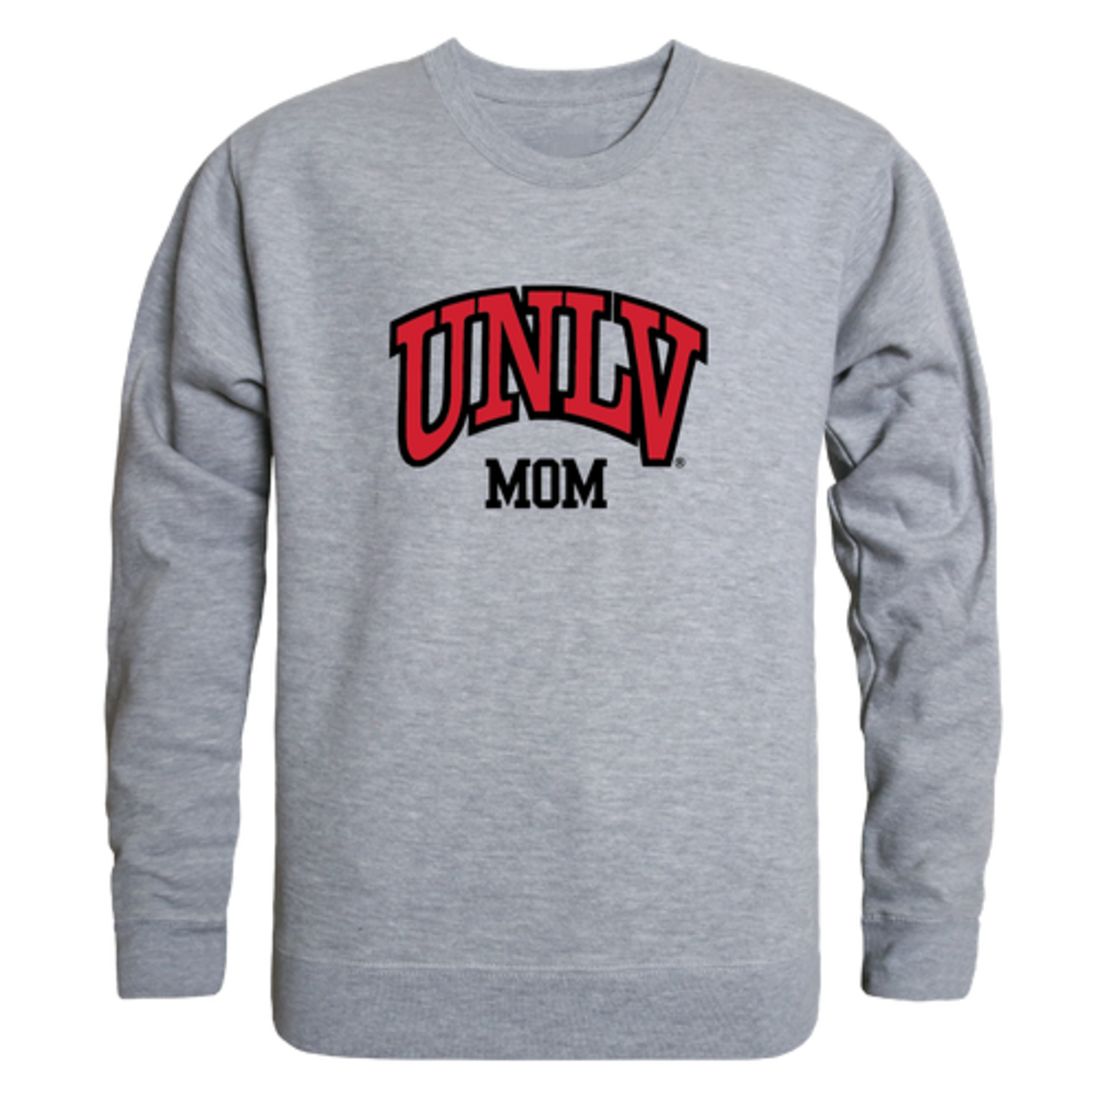 UNLV University of Nevada Las Vegas Rebels Mom Fleece Crewneck Pullover Sweatshirt Heather Grey Small-Campus-Wardrobe